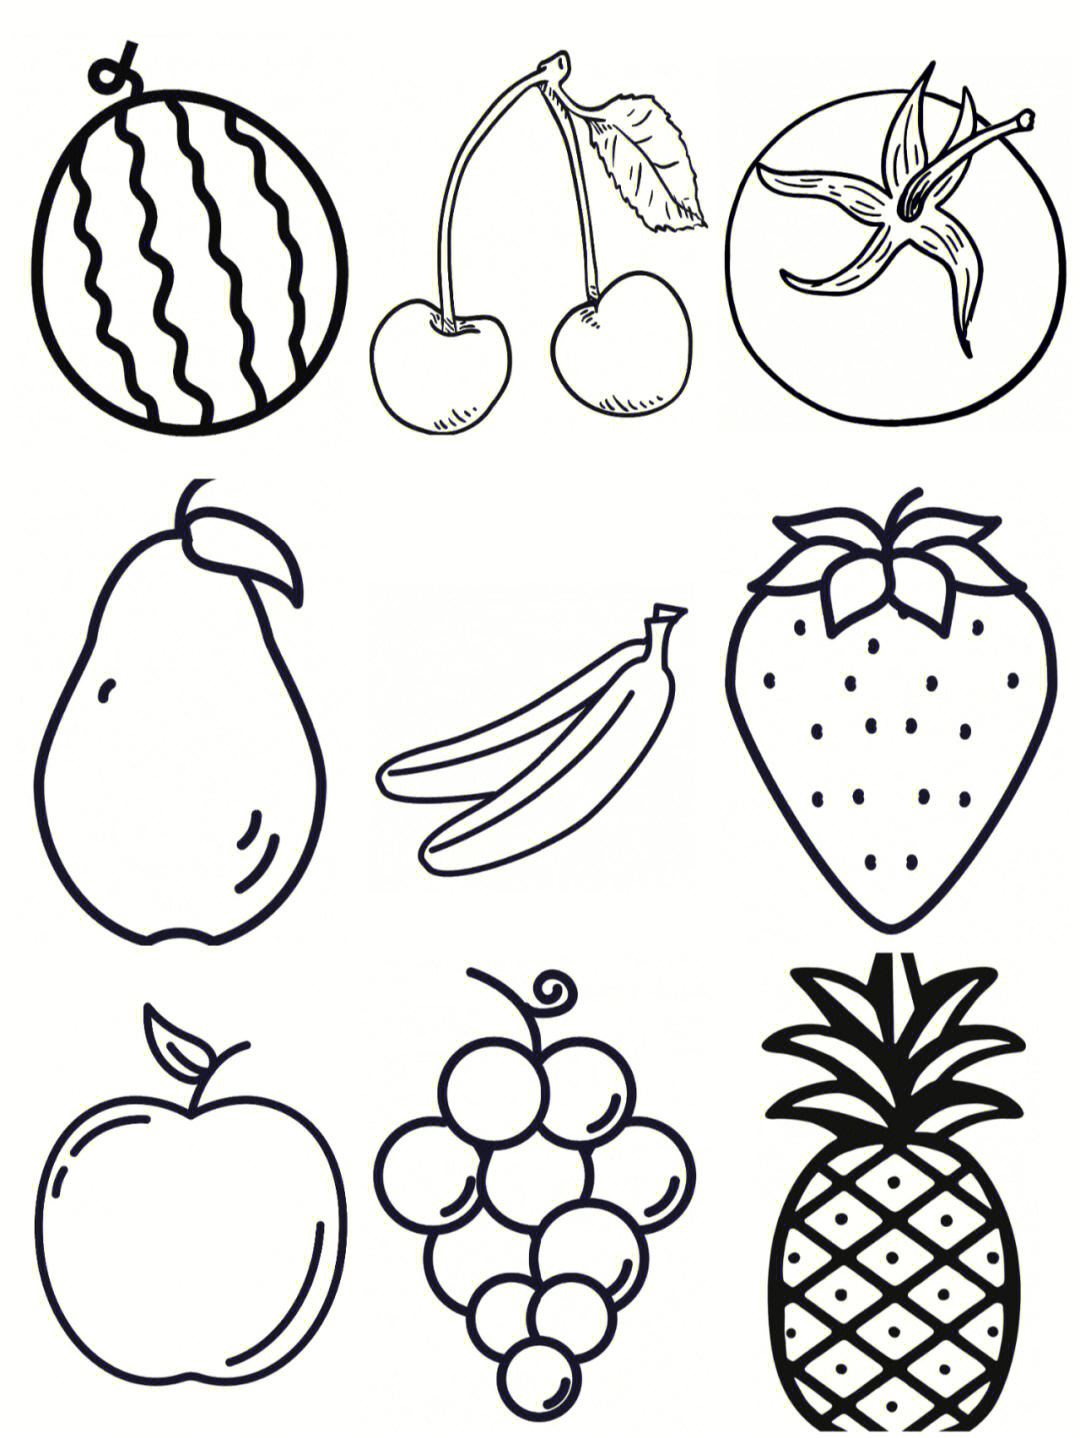 美味的水果简笔画图片